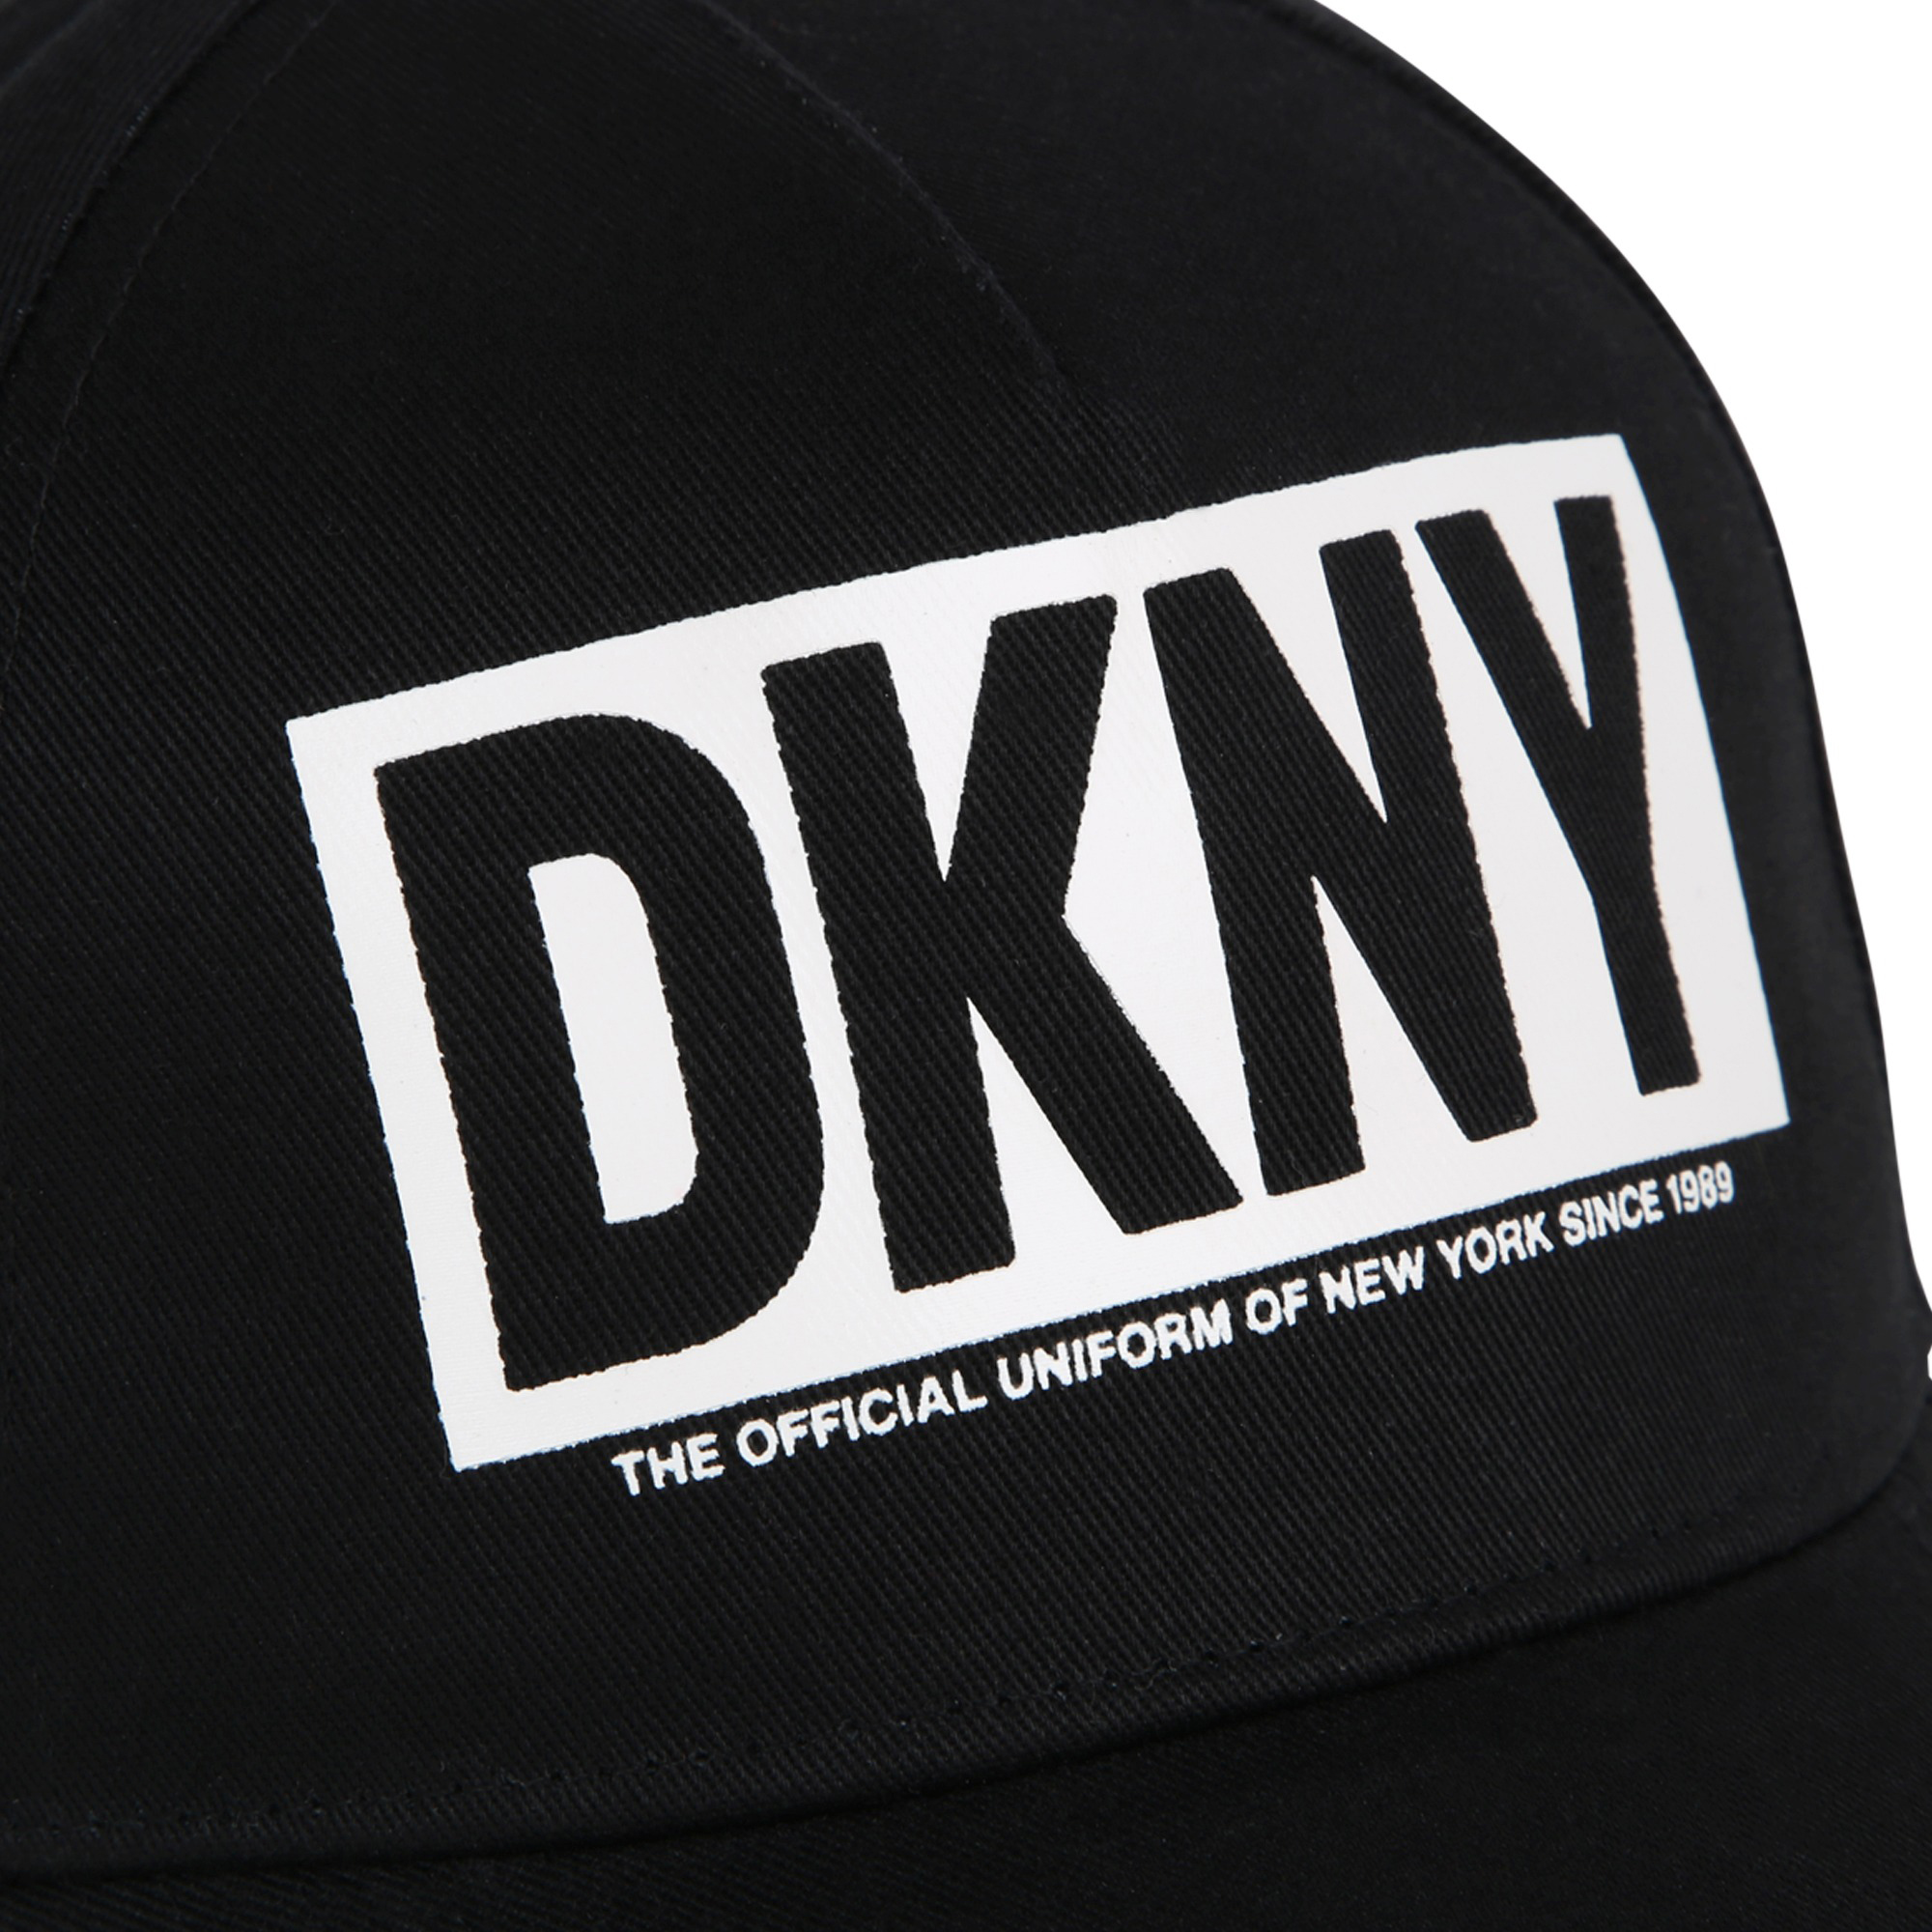 Gorra con logo y velcro DKNY para UNISEXO